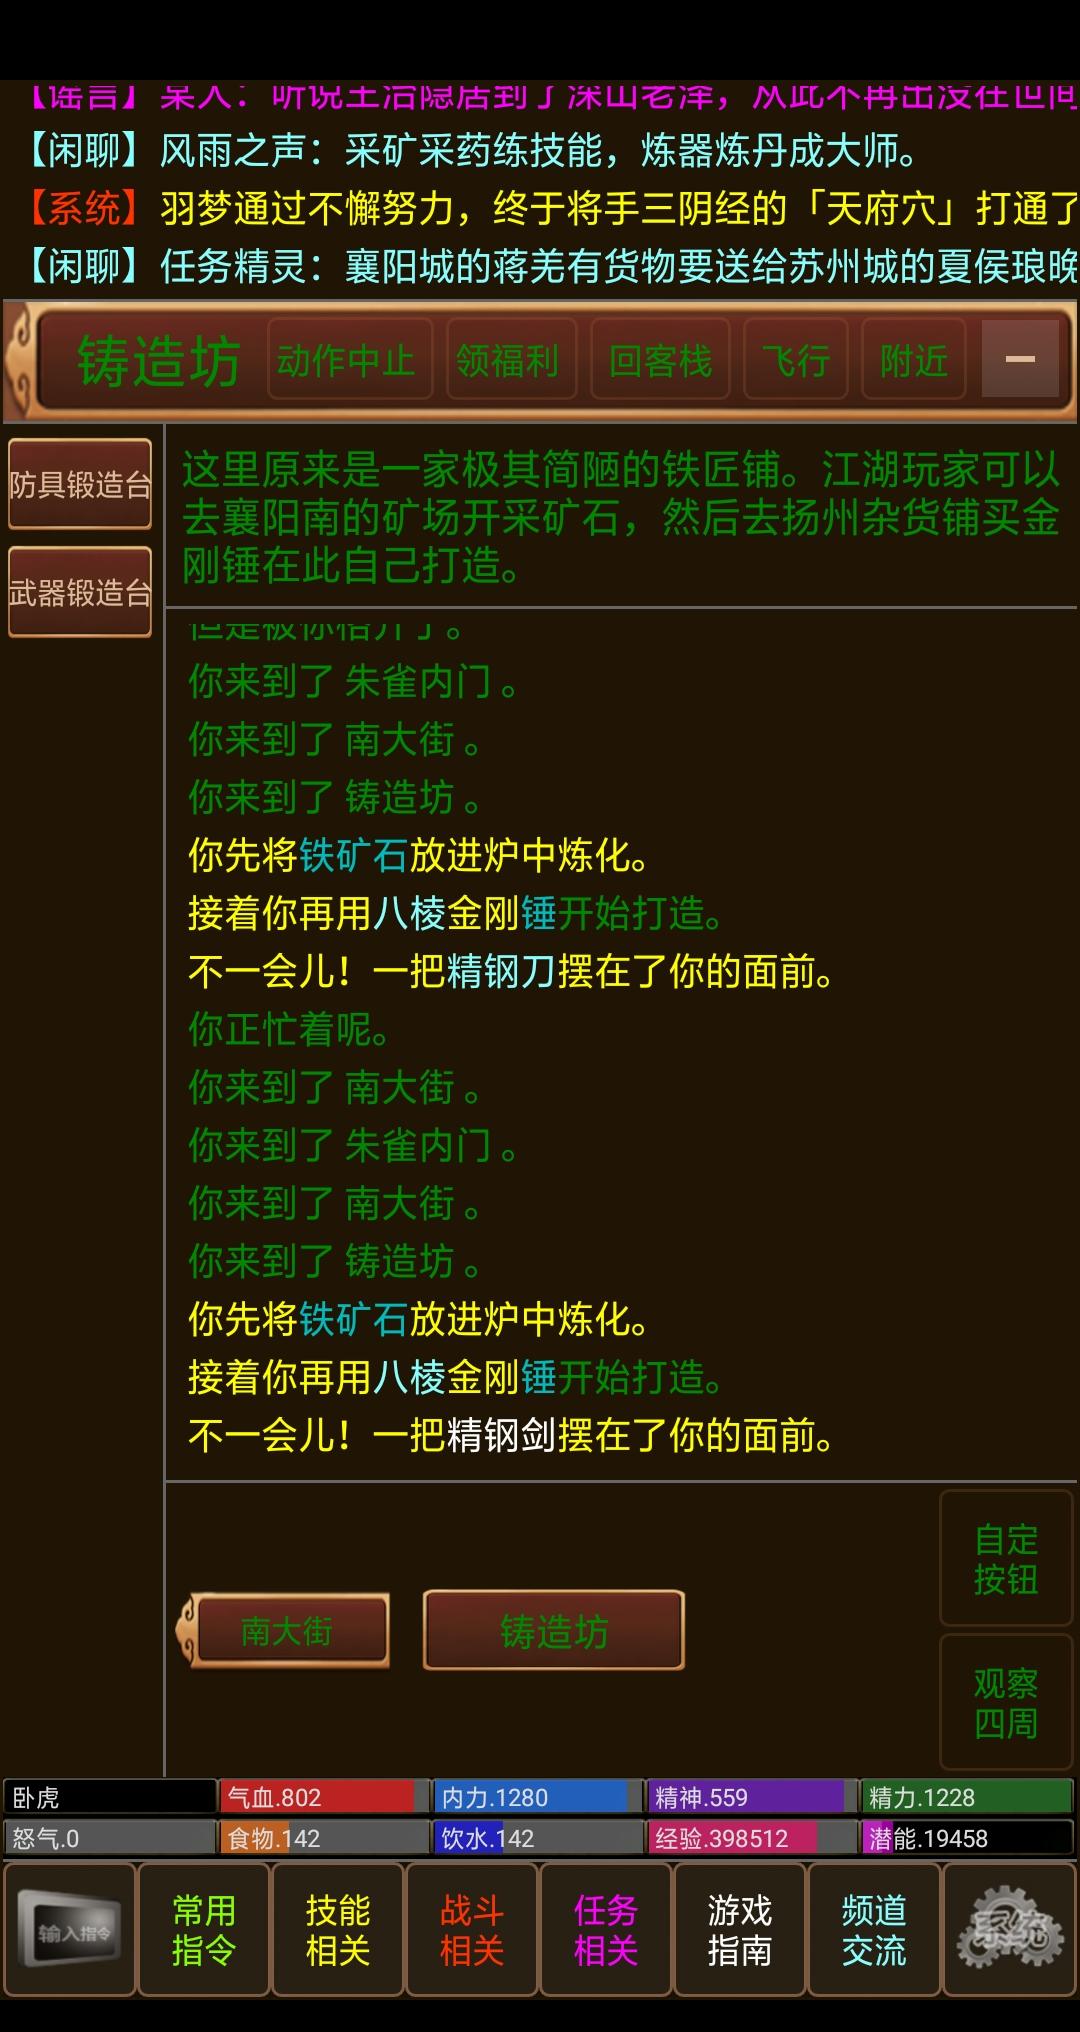 Screenshot 1 of Jiangshan-Wind und Regen 2.1.0